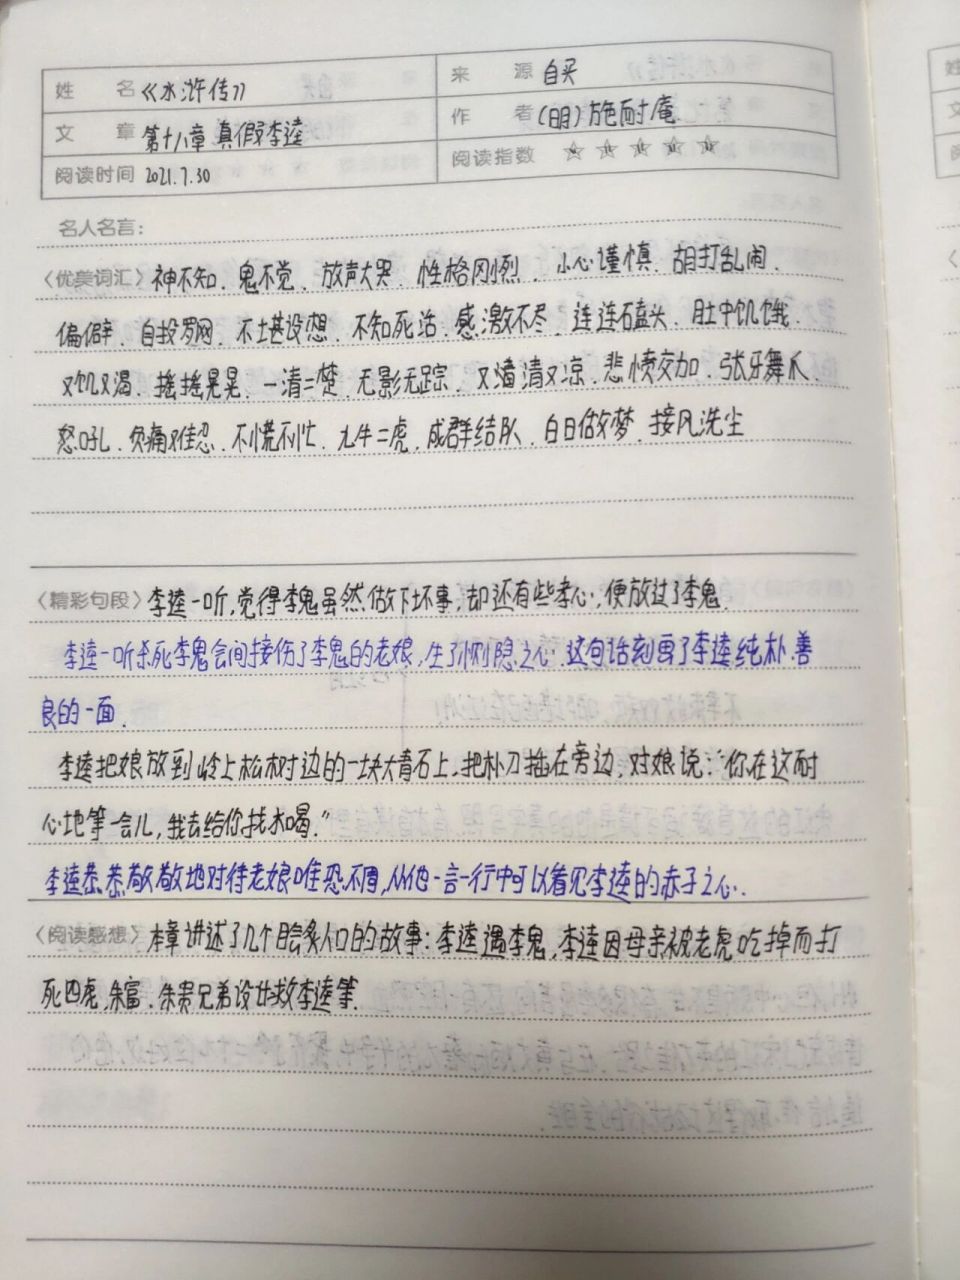 水浒传读书笔记格式图片